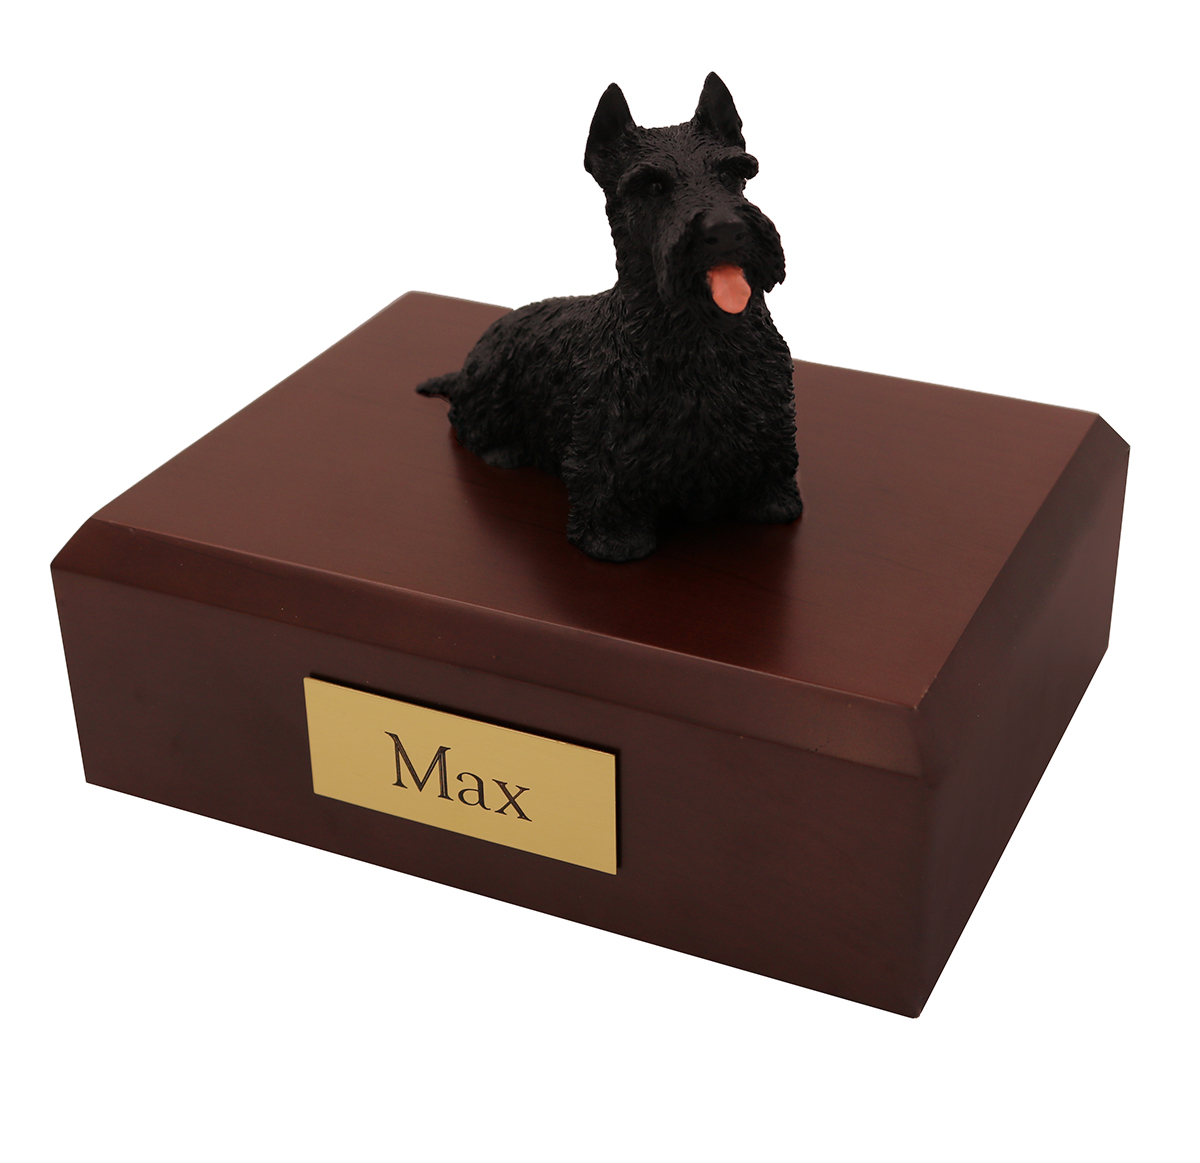 Dog, Scottish Terrier, Black - Figurine Urn